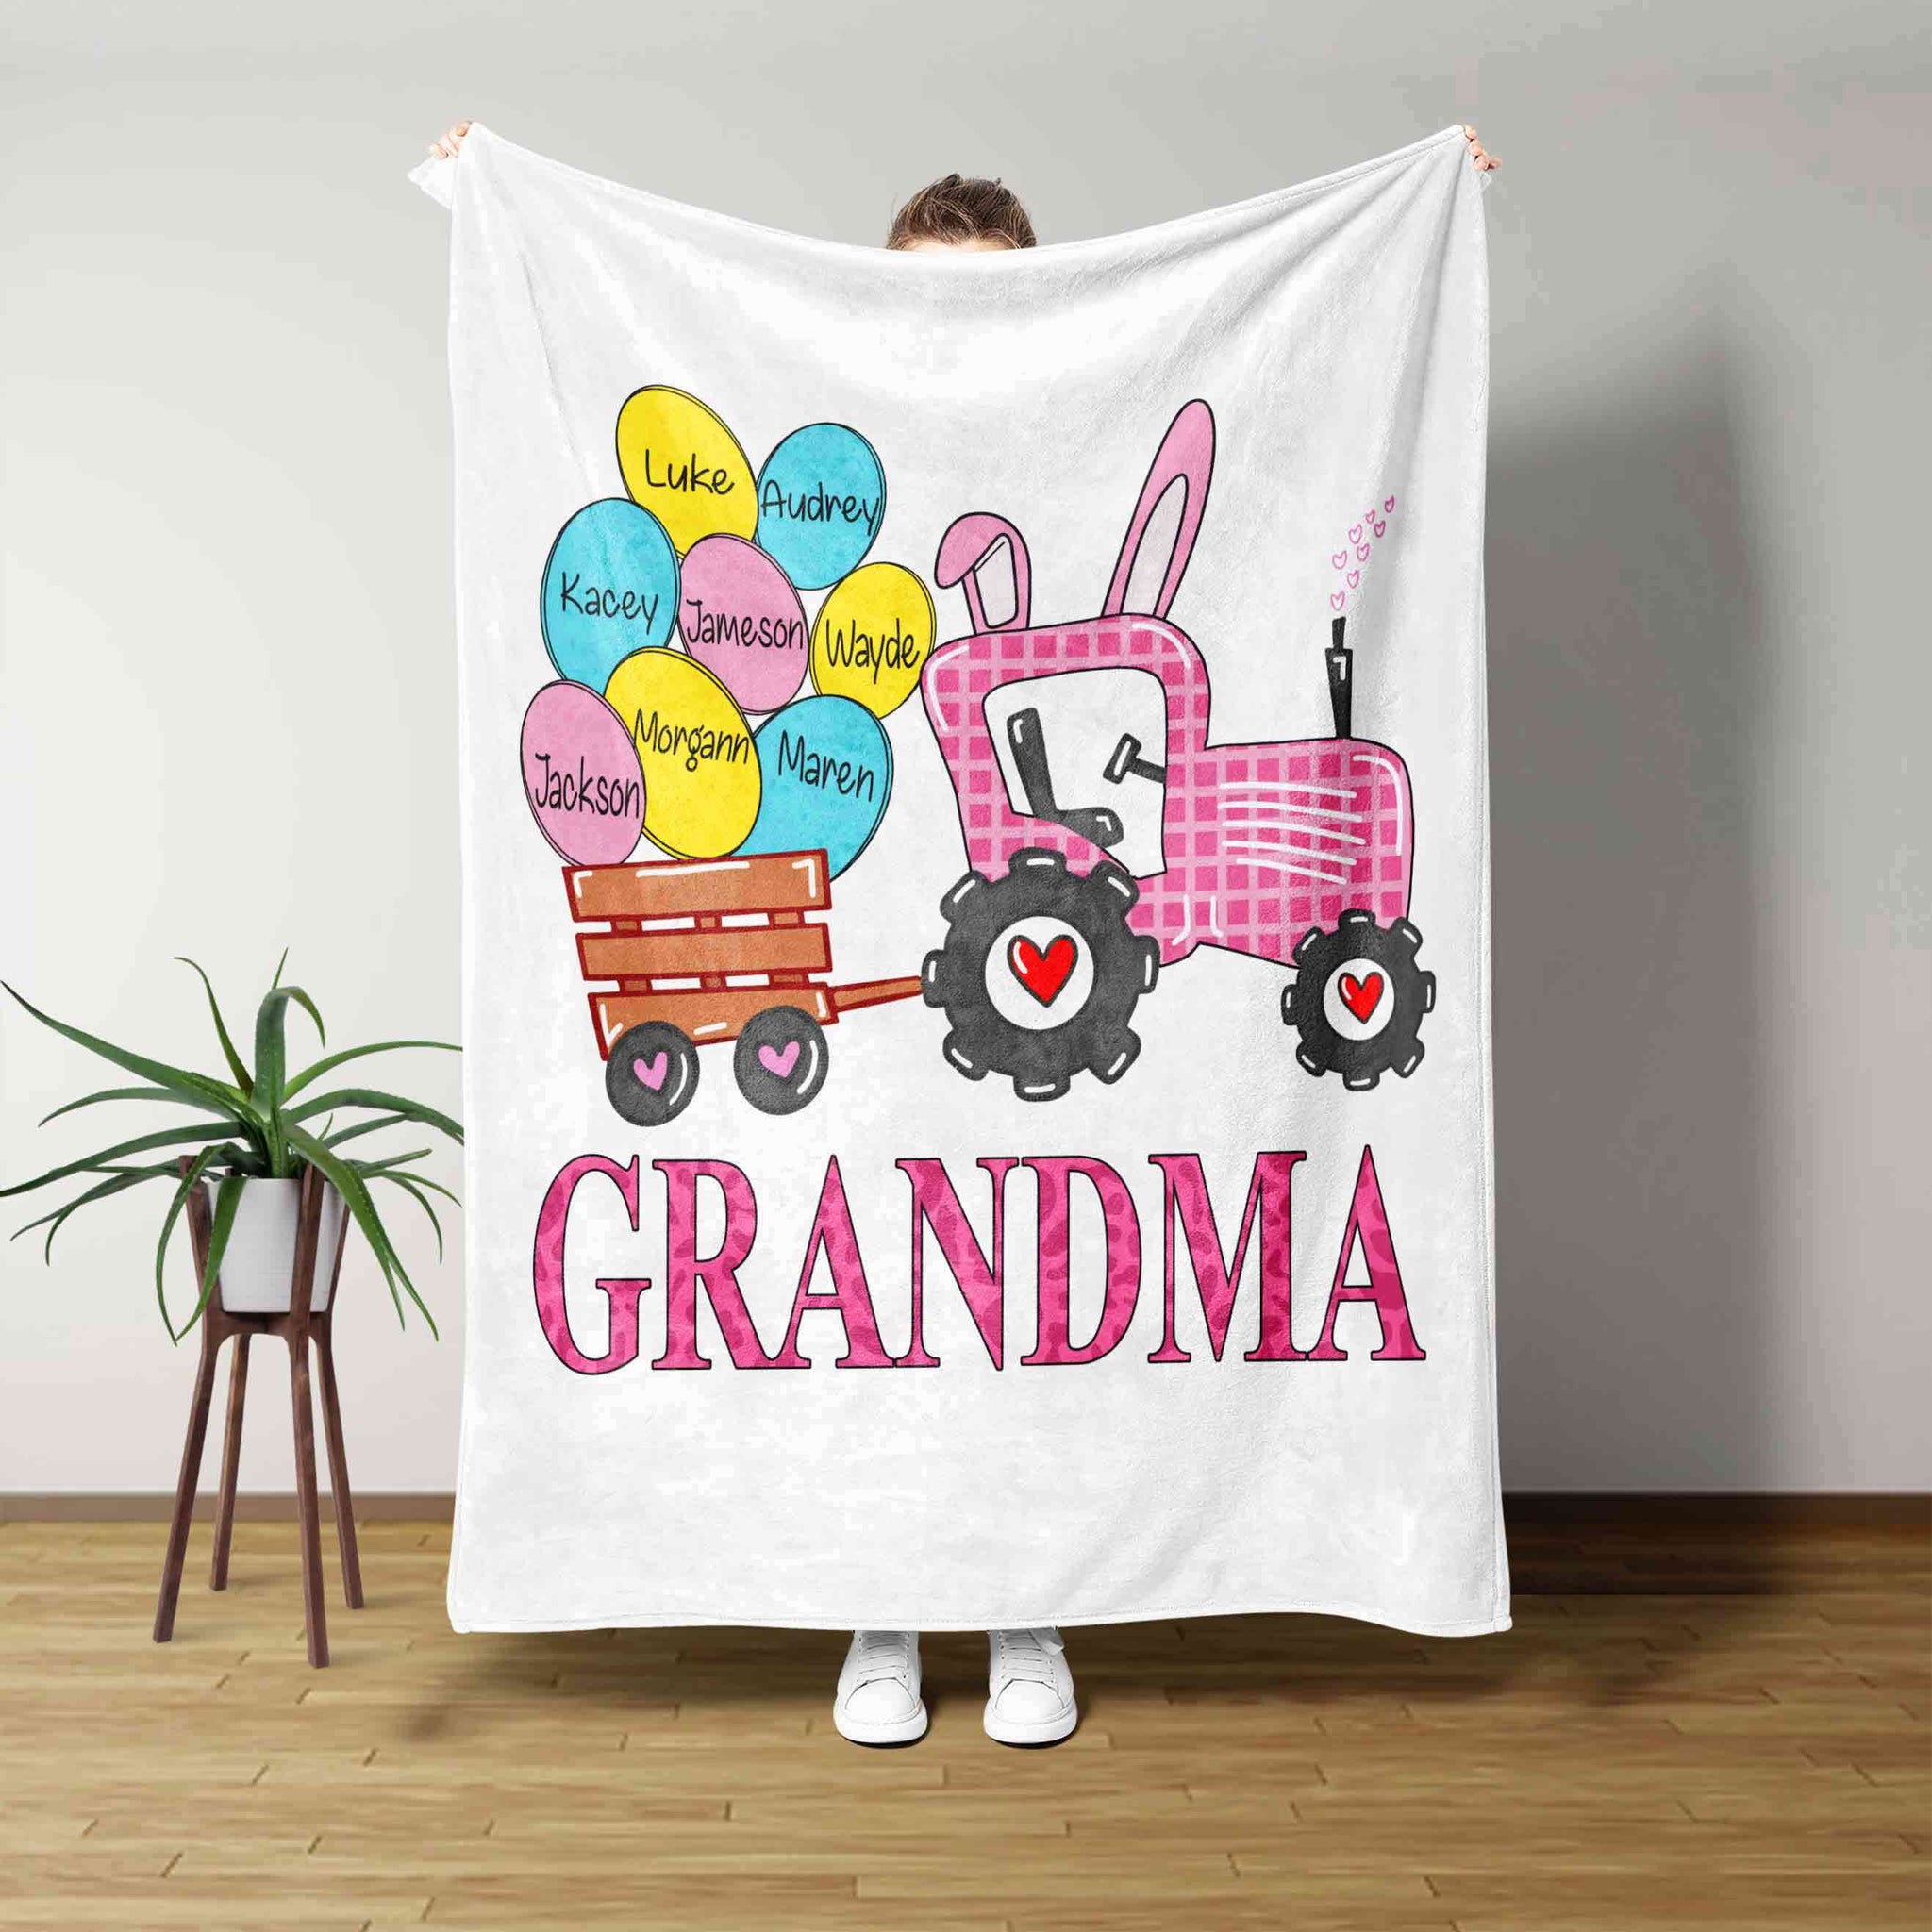 Grandma Blanket, Truck Blanket, Egg Blanket, Heart Blanket, Family Blanket, Custom Name Blanket, Gift Blanket